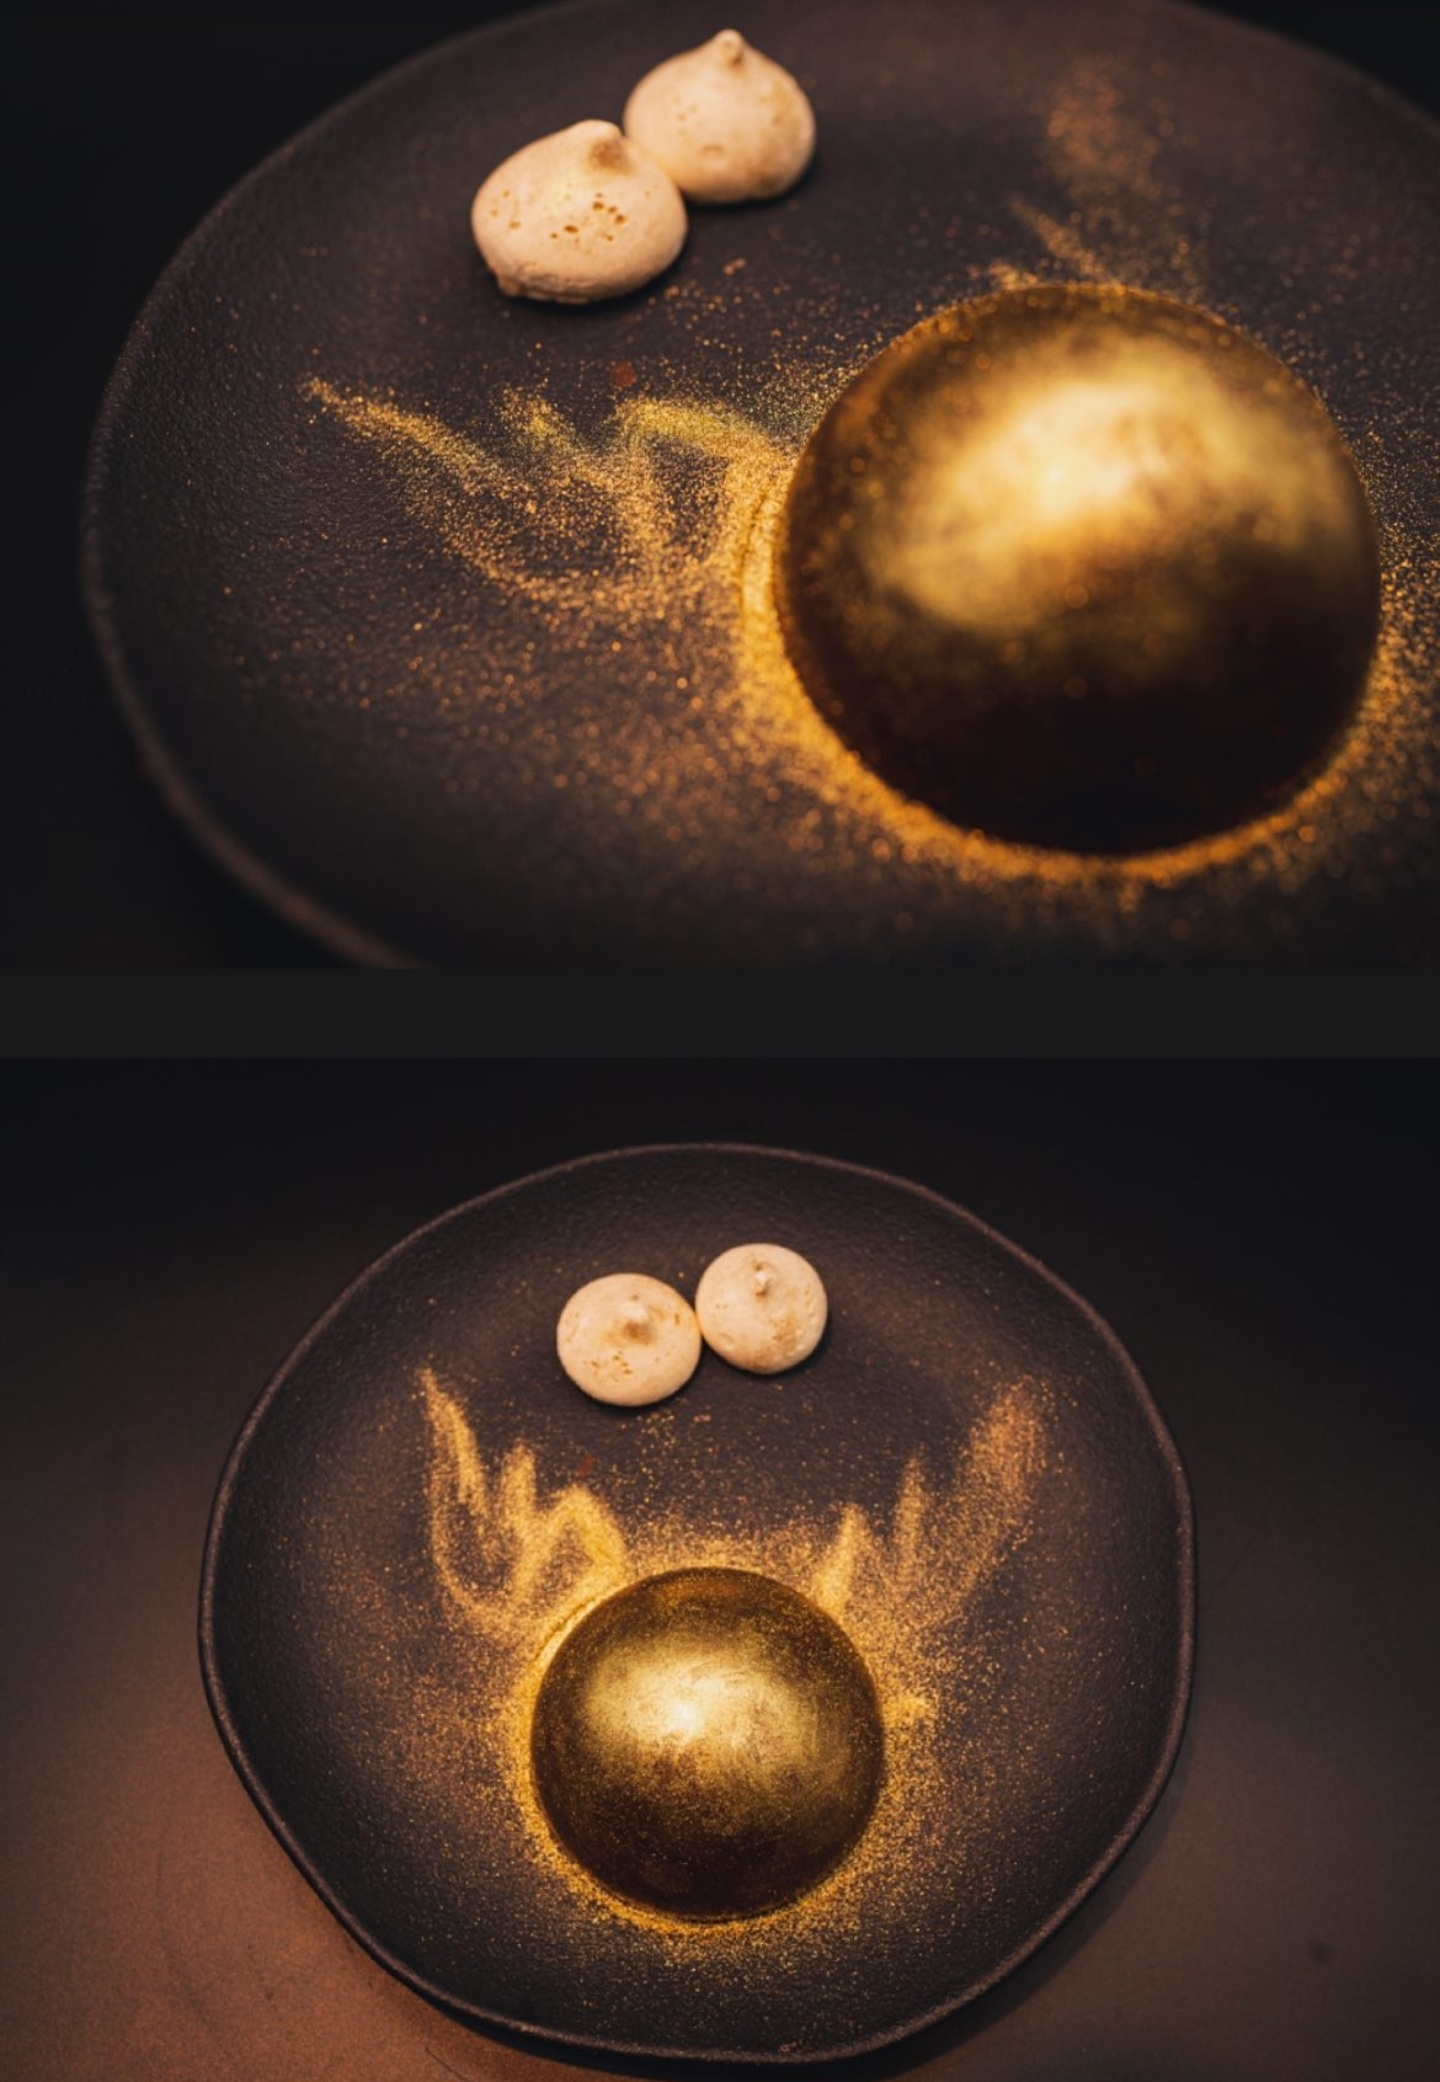 Imagem mostra prato, com bola dourada de chocolate no canto de um prato